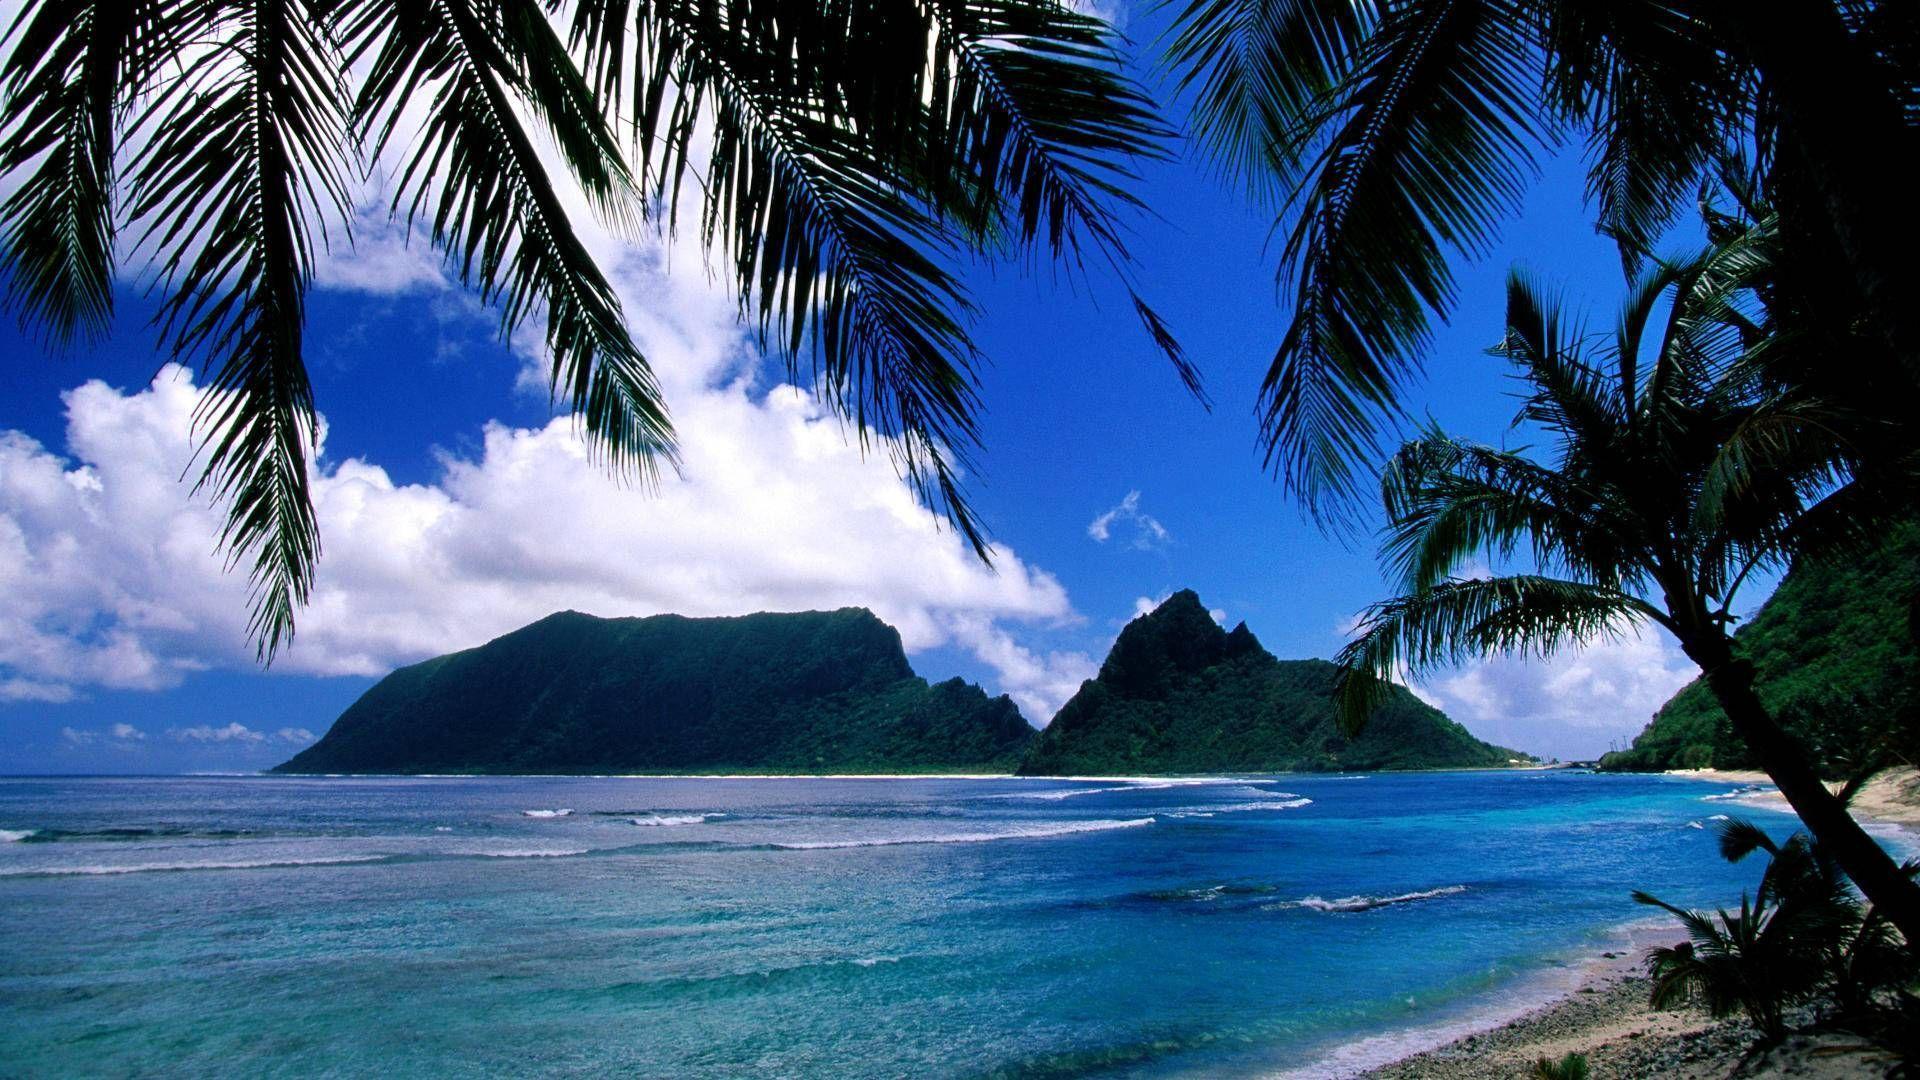 Samoan Backgrounds 49 images